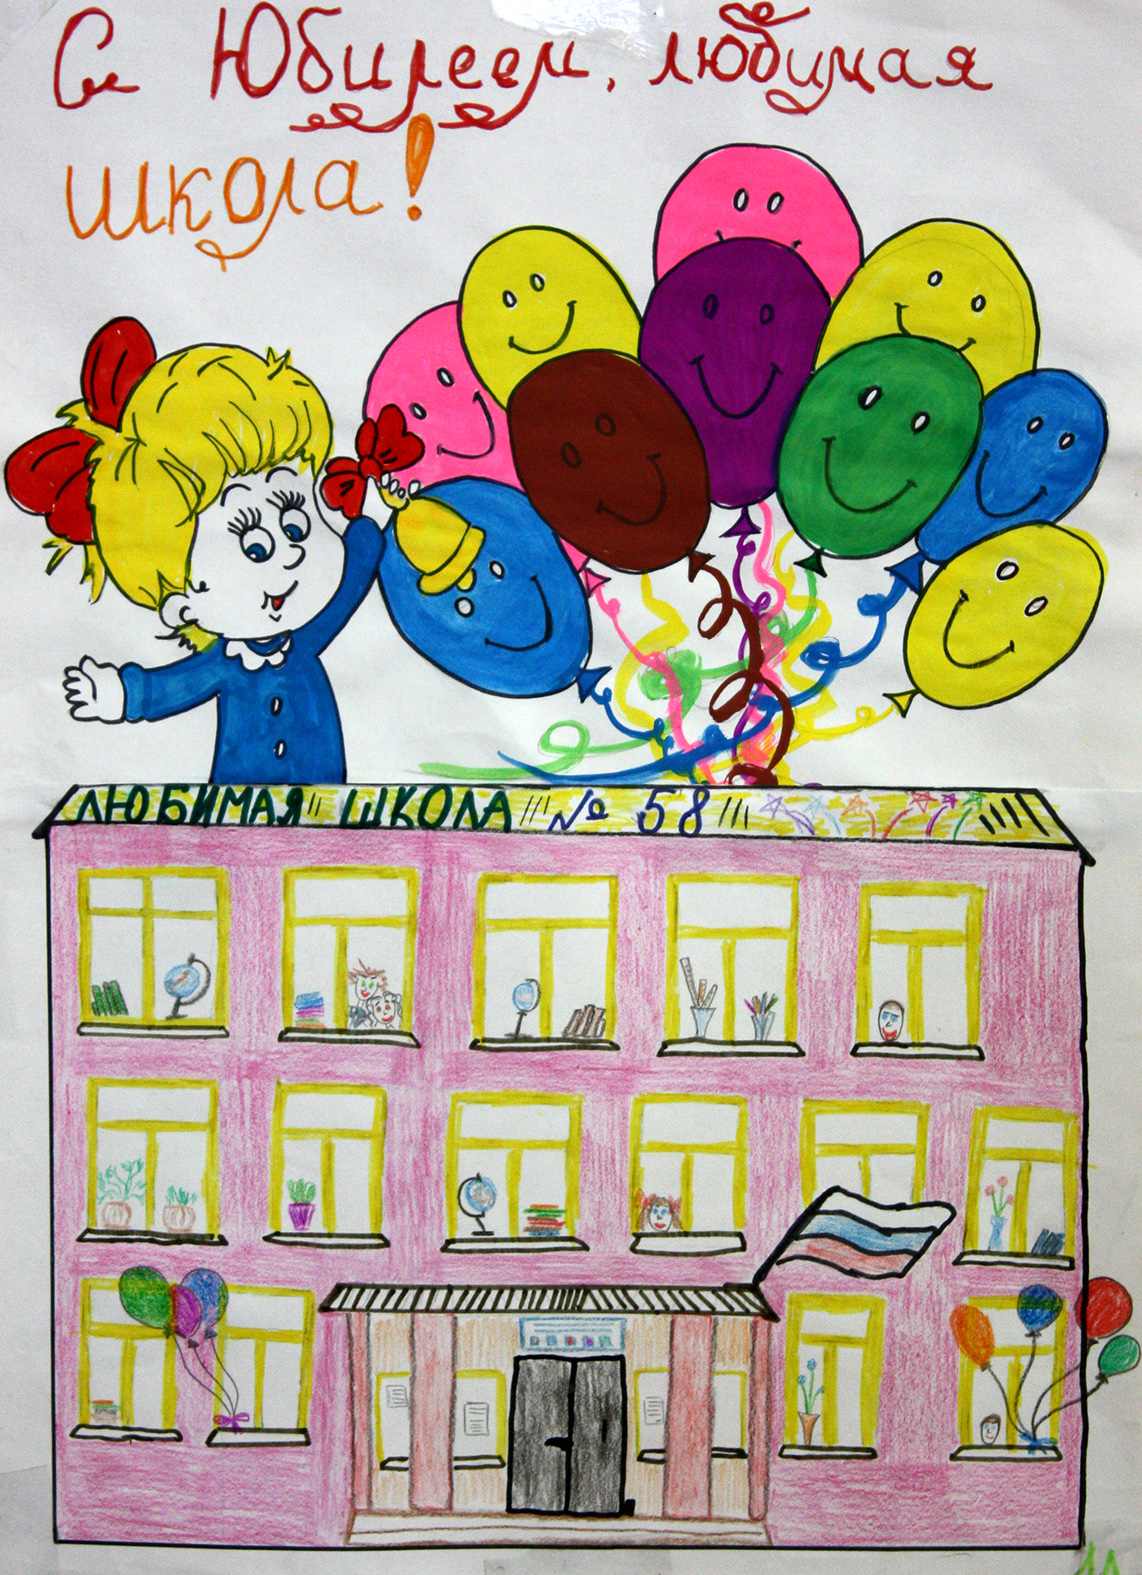 Юбилей школе 3. С днем рождения школа. Плакат на день рождения школы. Открытка с днем рождения школа. Рисунок к юбилею школы.